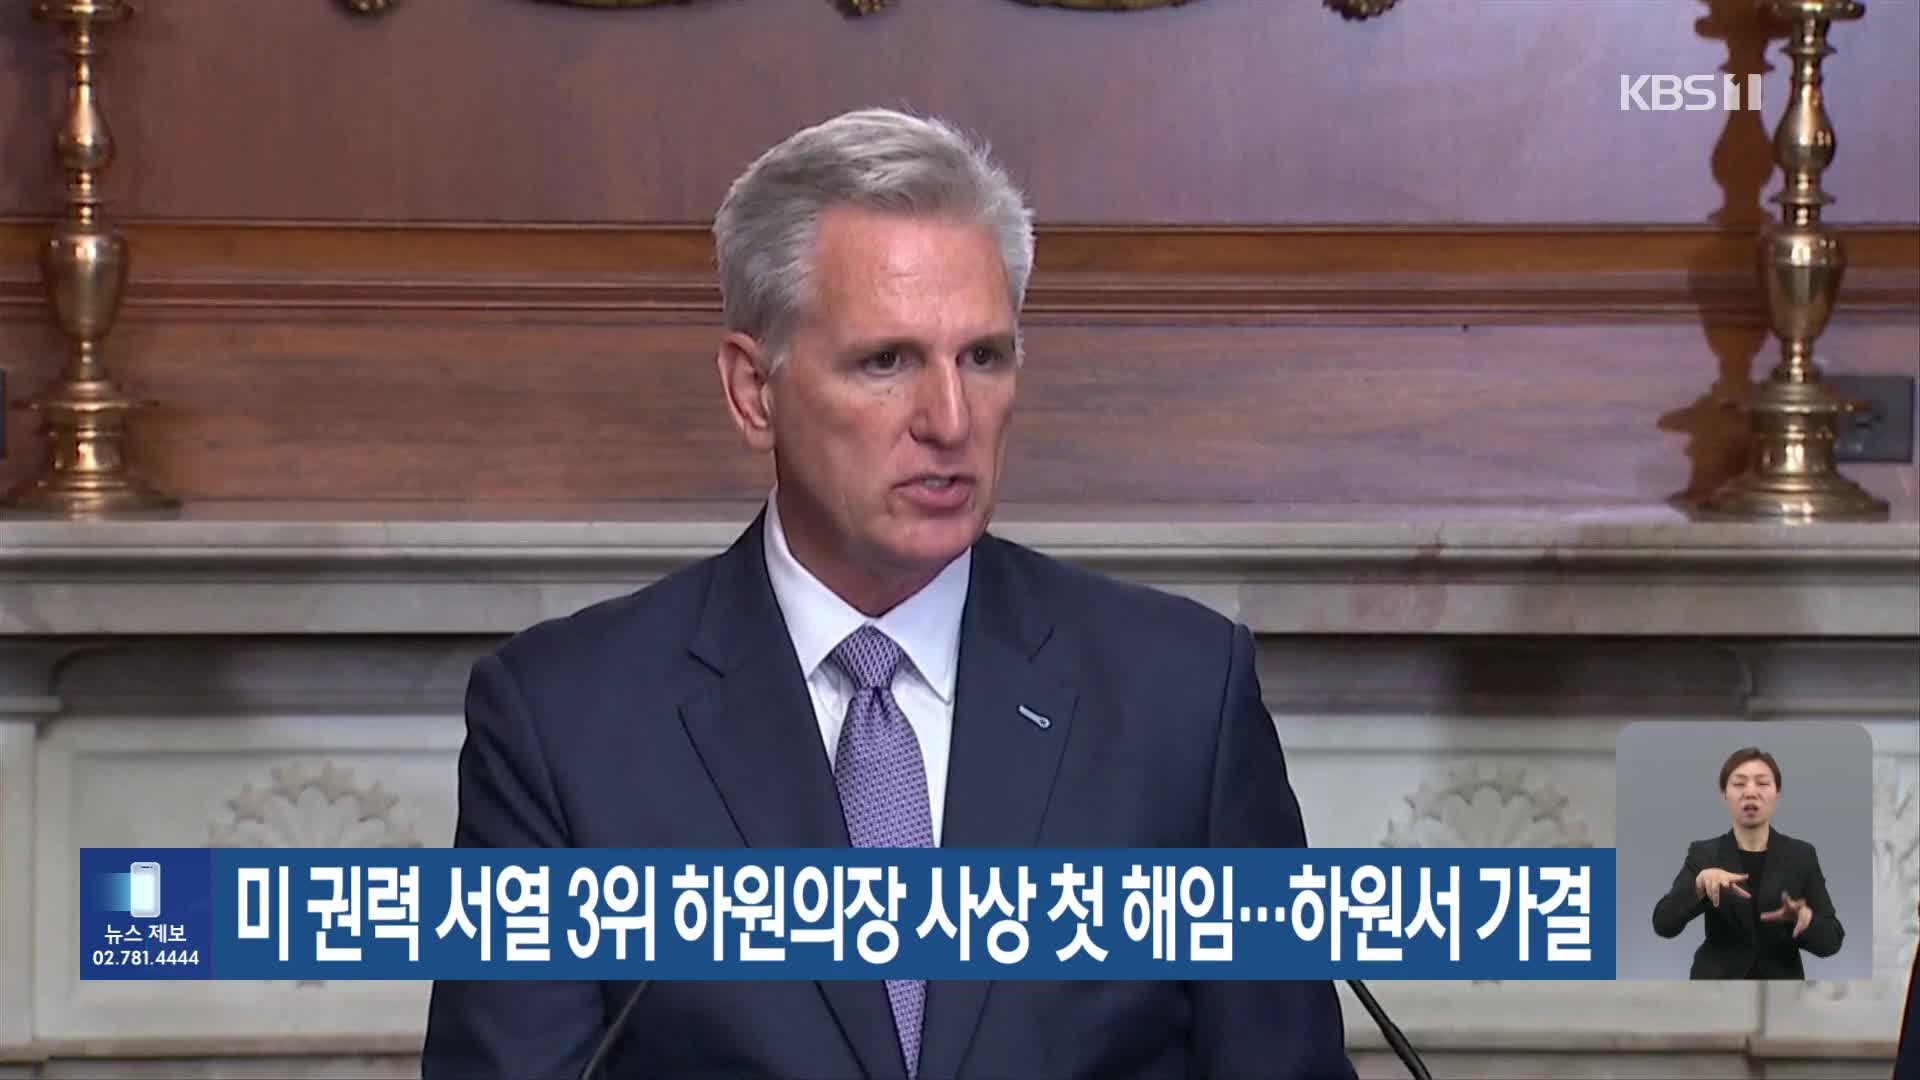 미 권력 서열 3위 하원의장 사상 첫 해임…하원서 가결